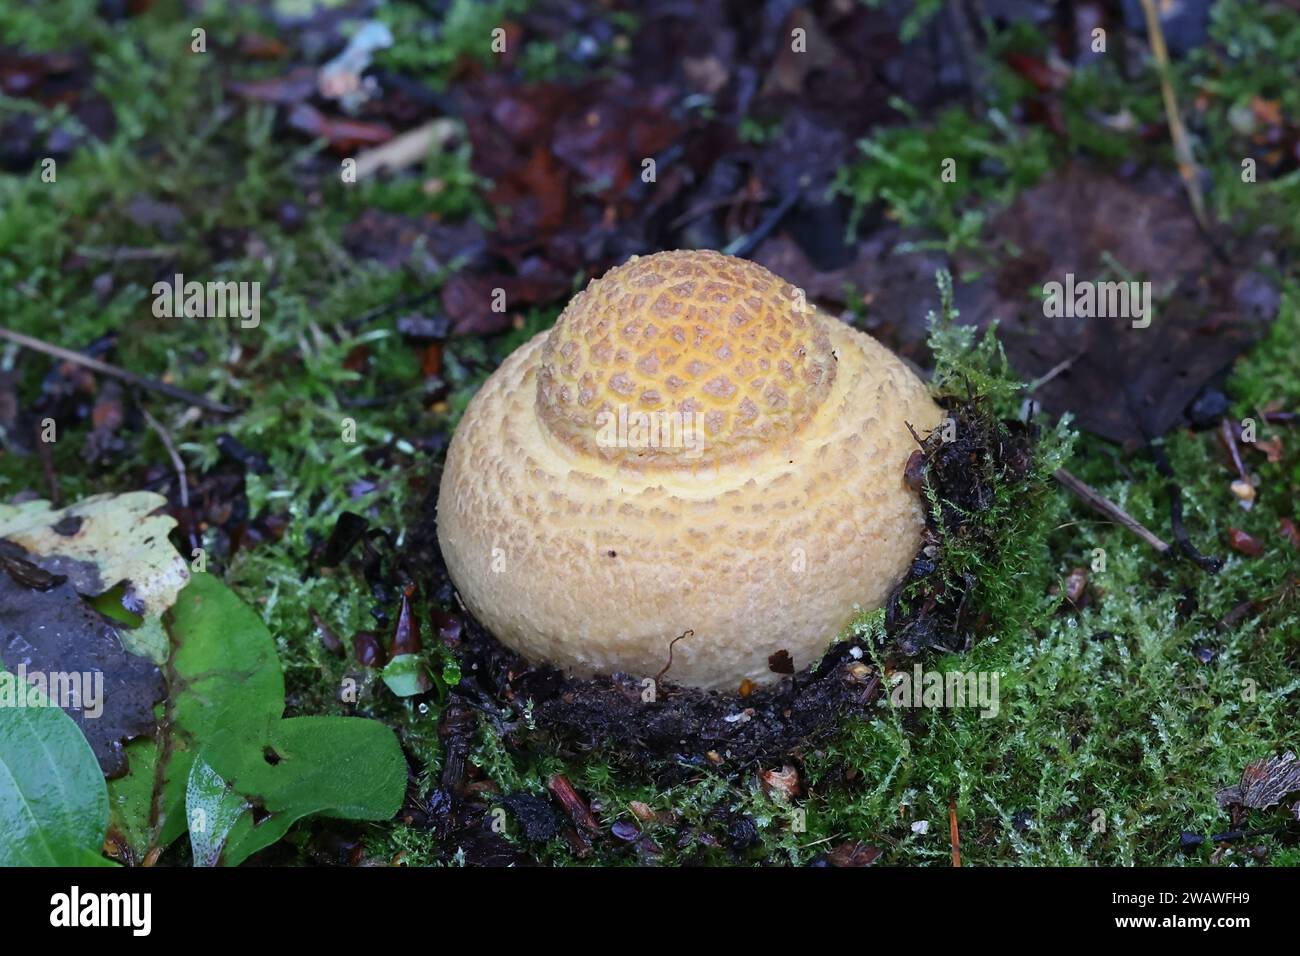 Très jeune Amanita muscaria, communément appelé agaric à la mouche ou amanita à la mouche, champignon toxique de Finlande Banque D'Images